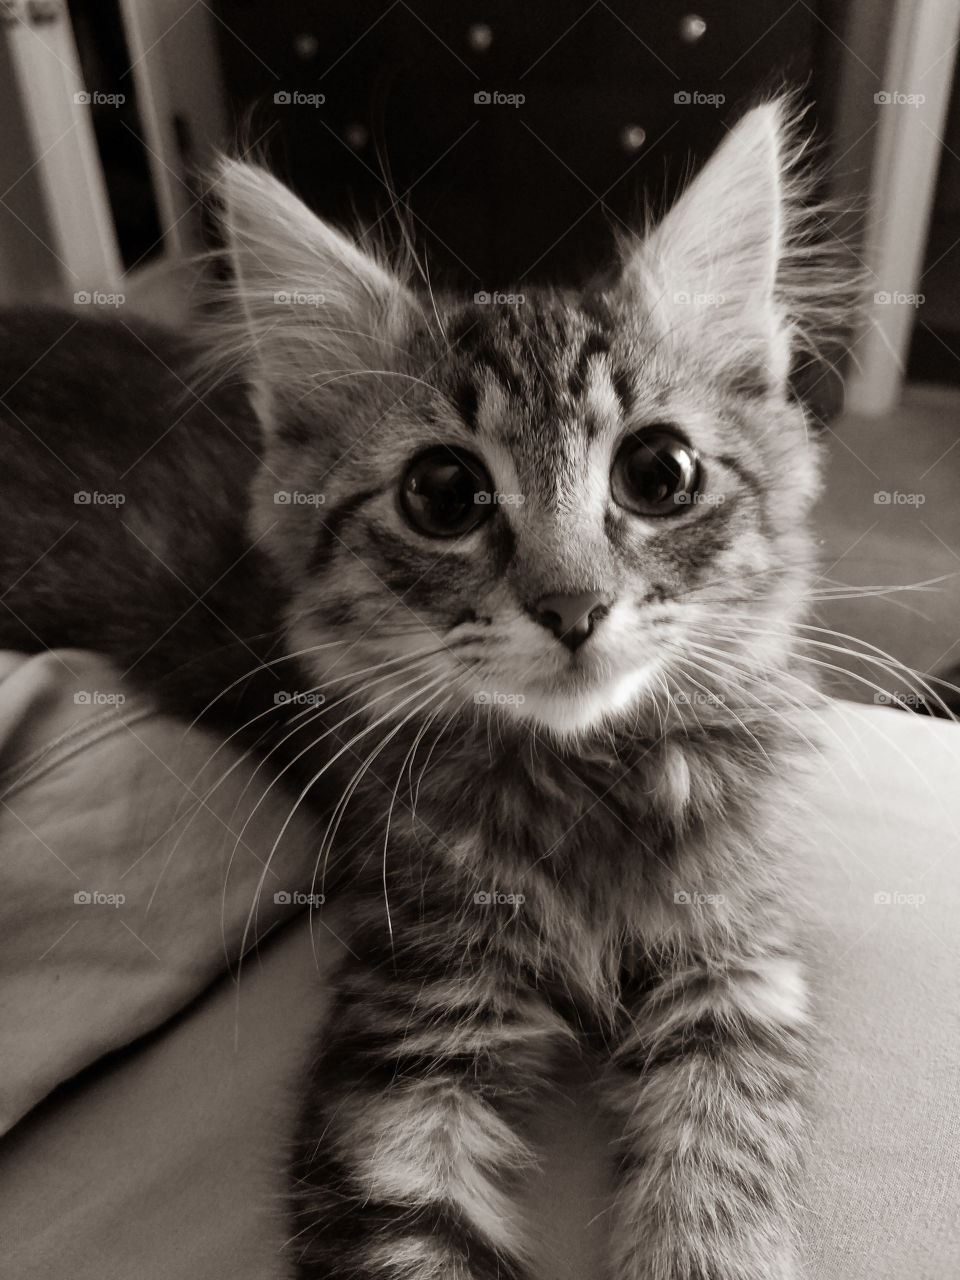 Rescue Kitten Named Tippy